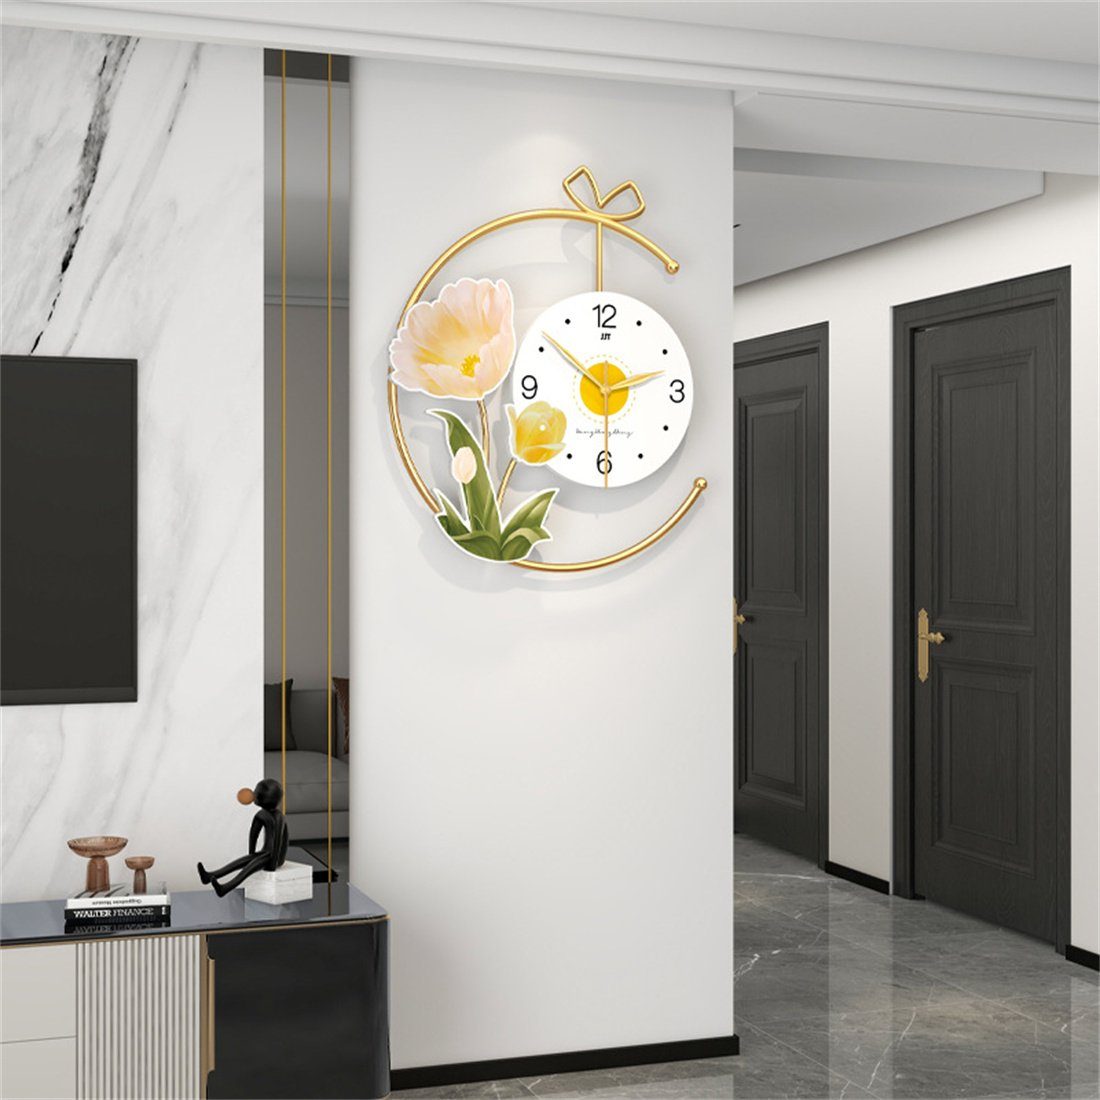 50cm Wohnzimmer,Uhr stille Wanduhr für Wanduhr DÖRÖY das Wanduhr, Dekorative Moderne